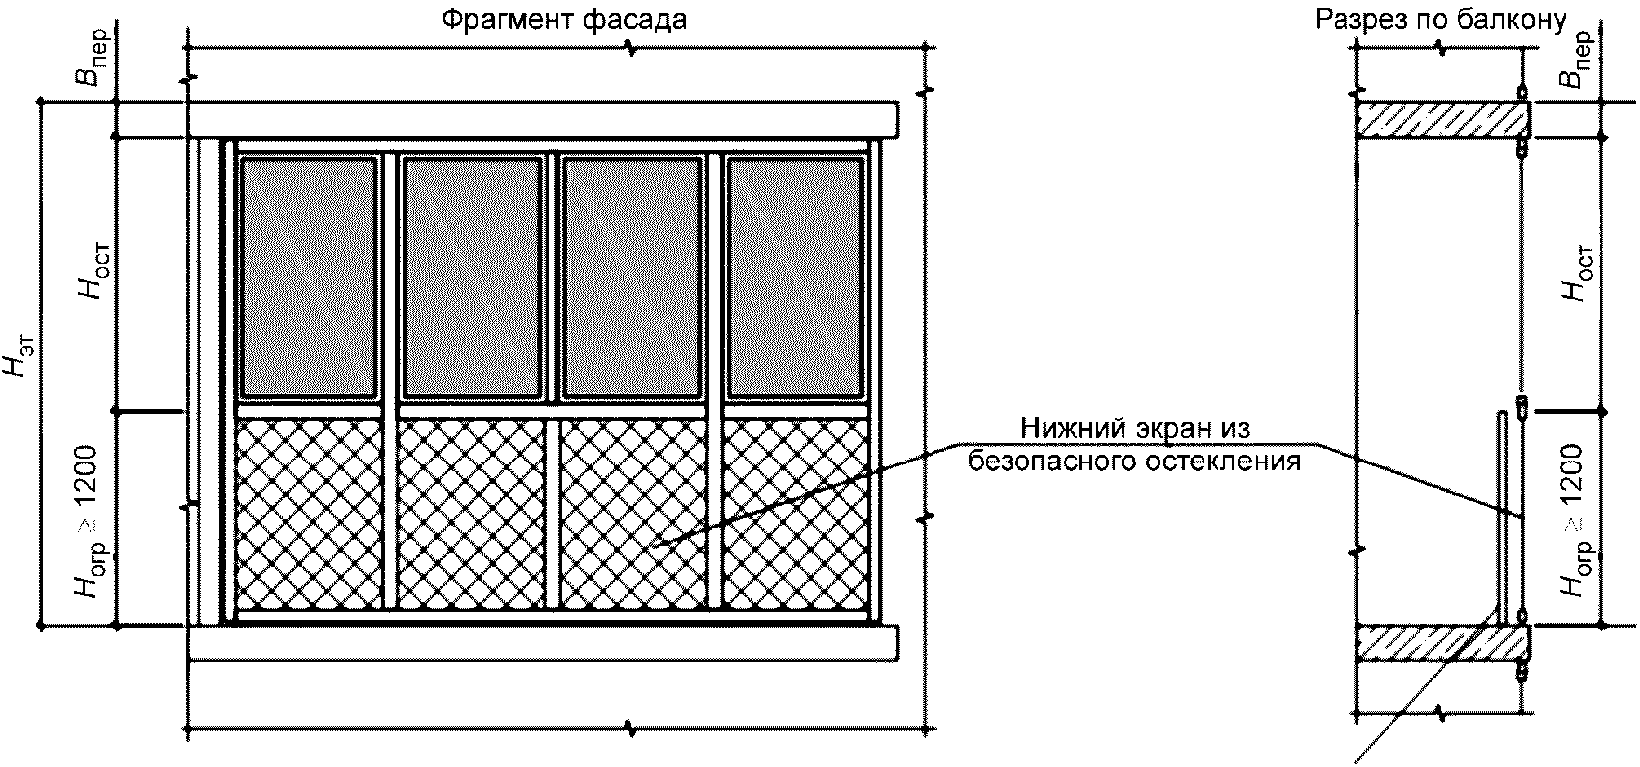 Схема балкона в панельном доме